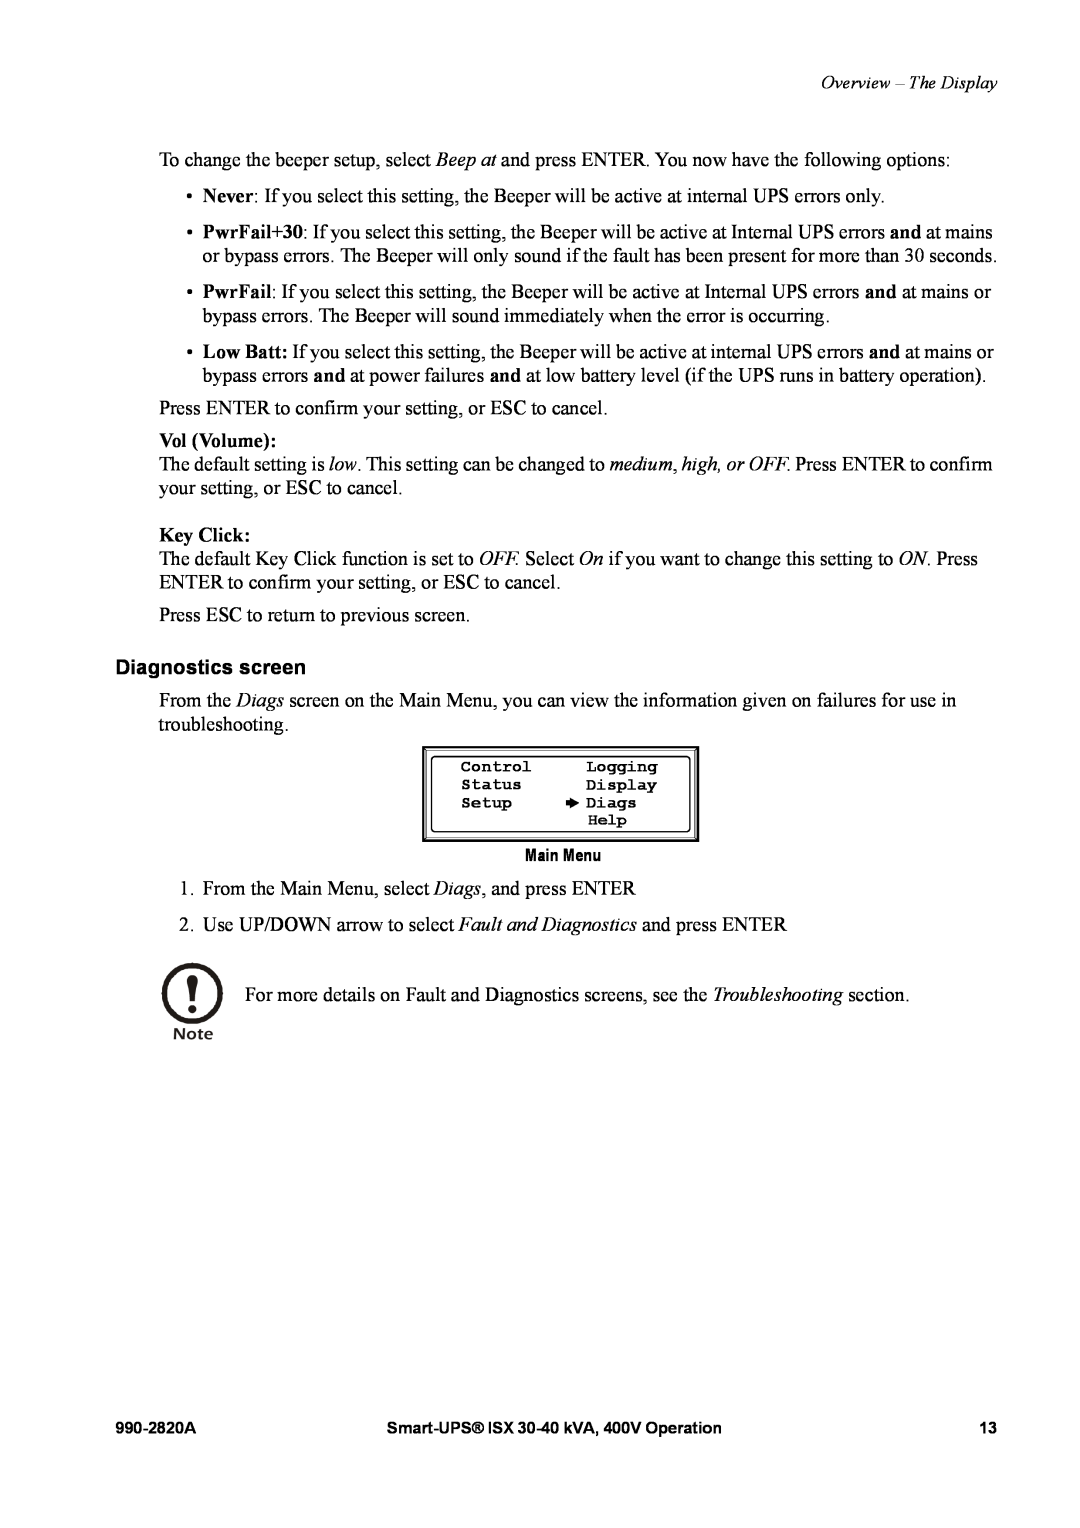 American Power Conversion VT ISX manual Vol Volume, Key Click, Diagnostics screen 